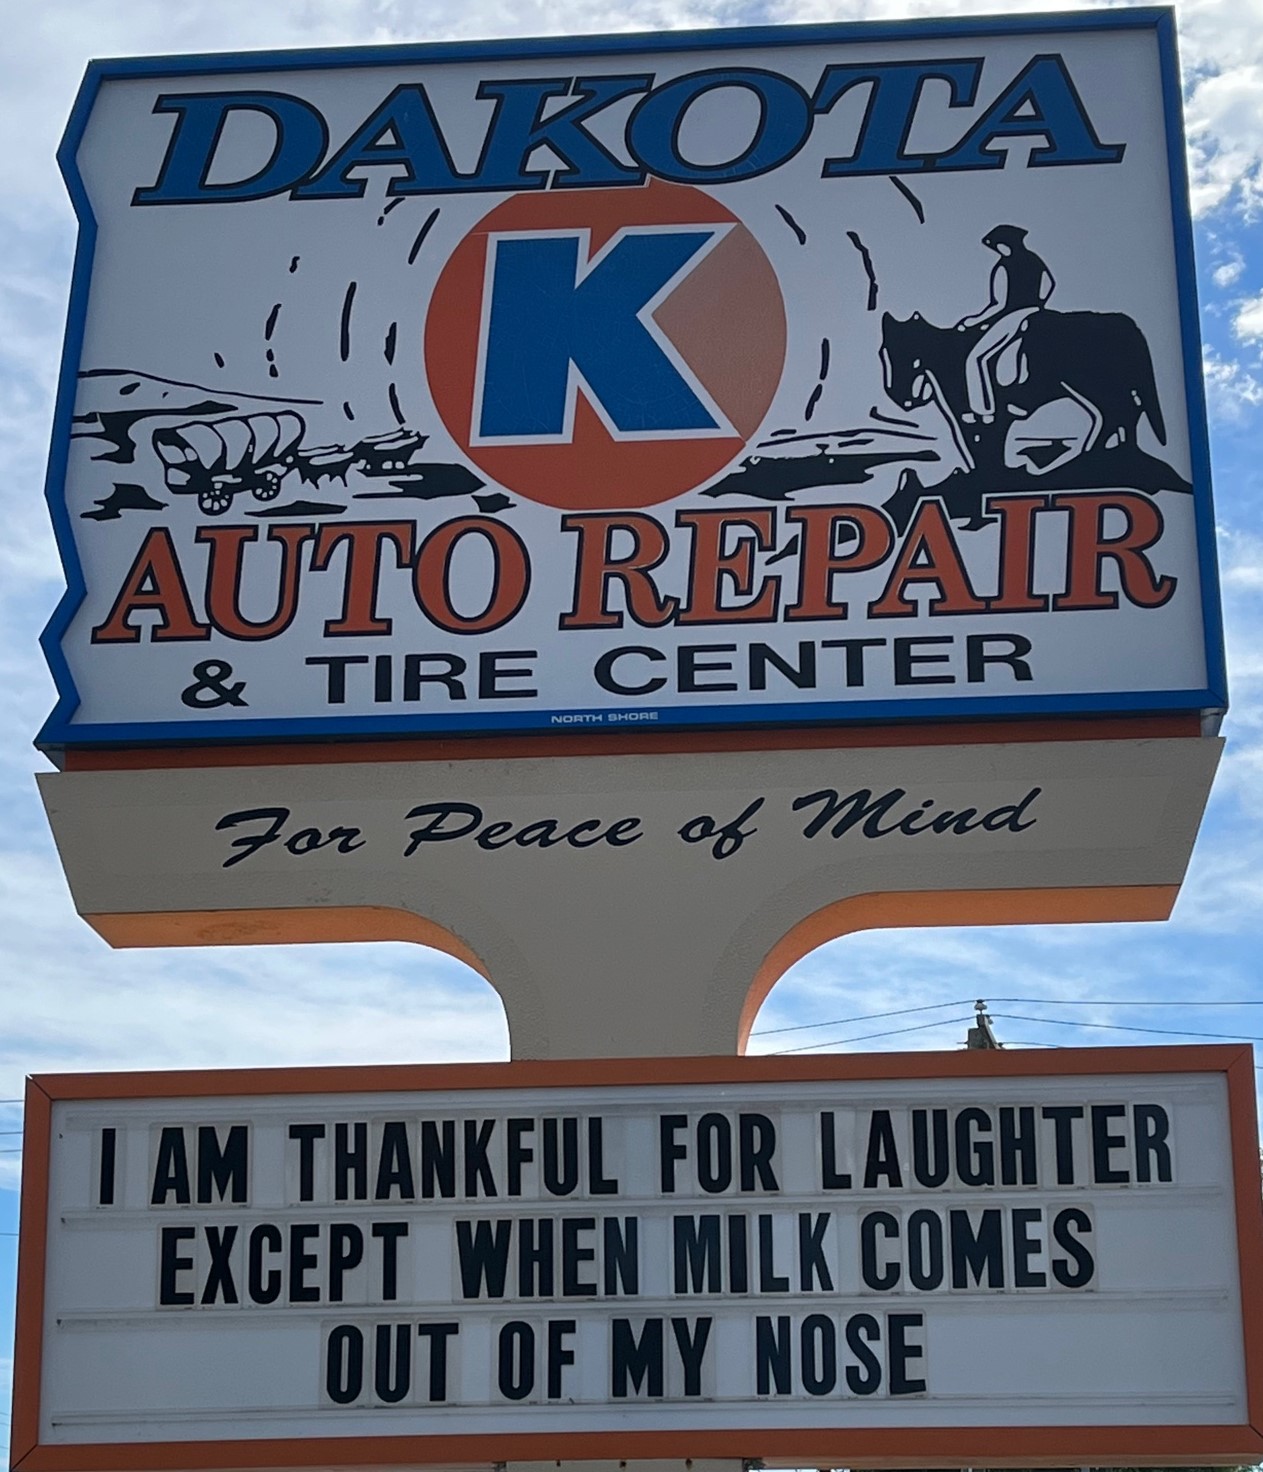 Dakota K Auto Repair & Tire Center